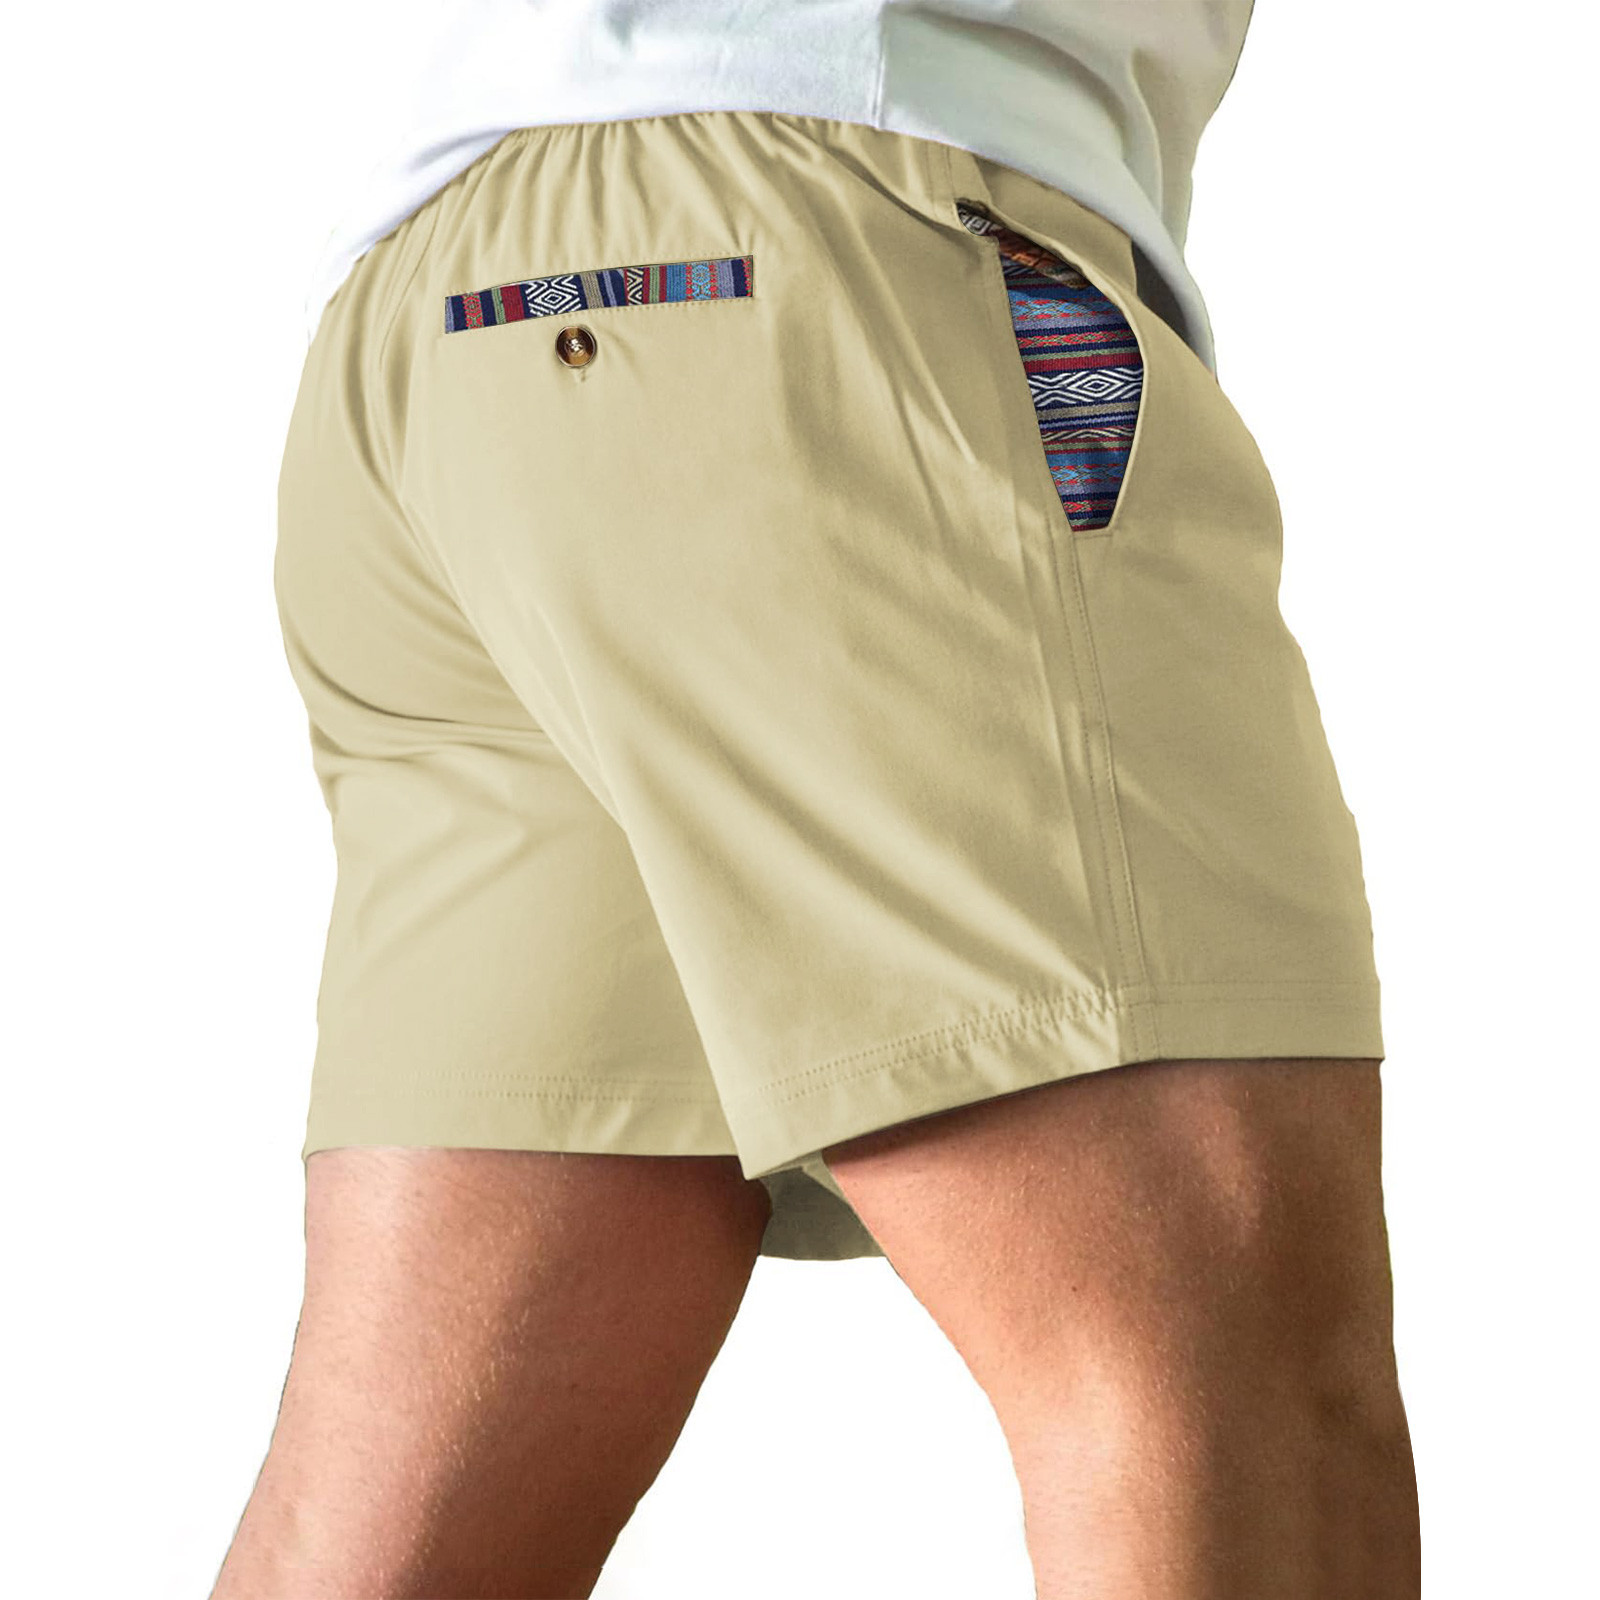 Mens Shorts Summer Savings HBGGGUJ Lace-Up Shorts, Men's Quick-Dry ...